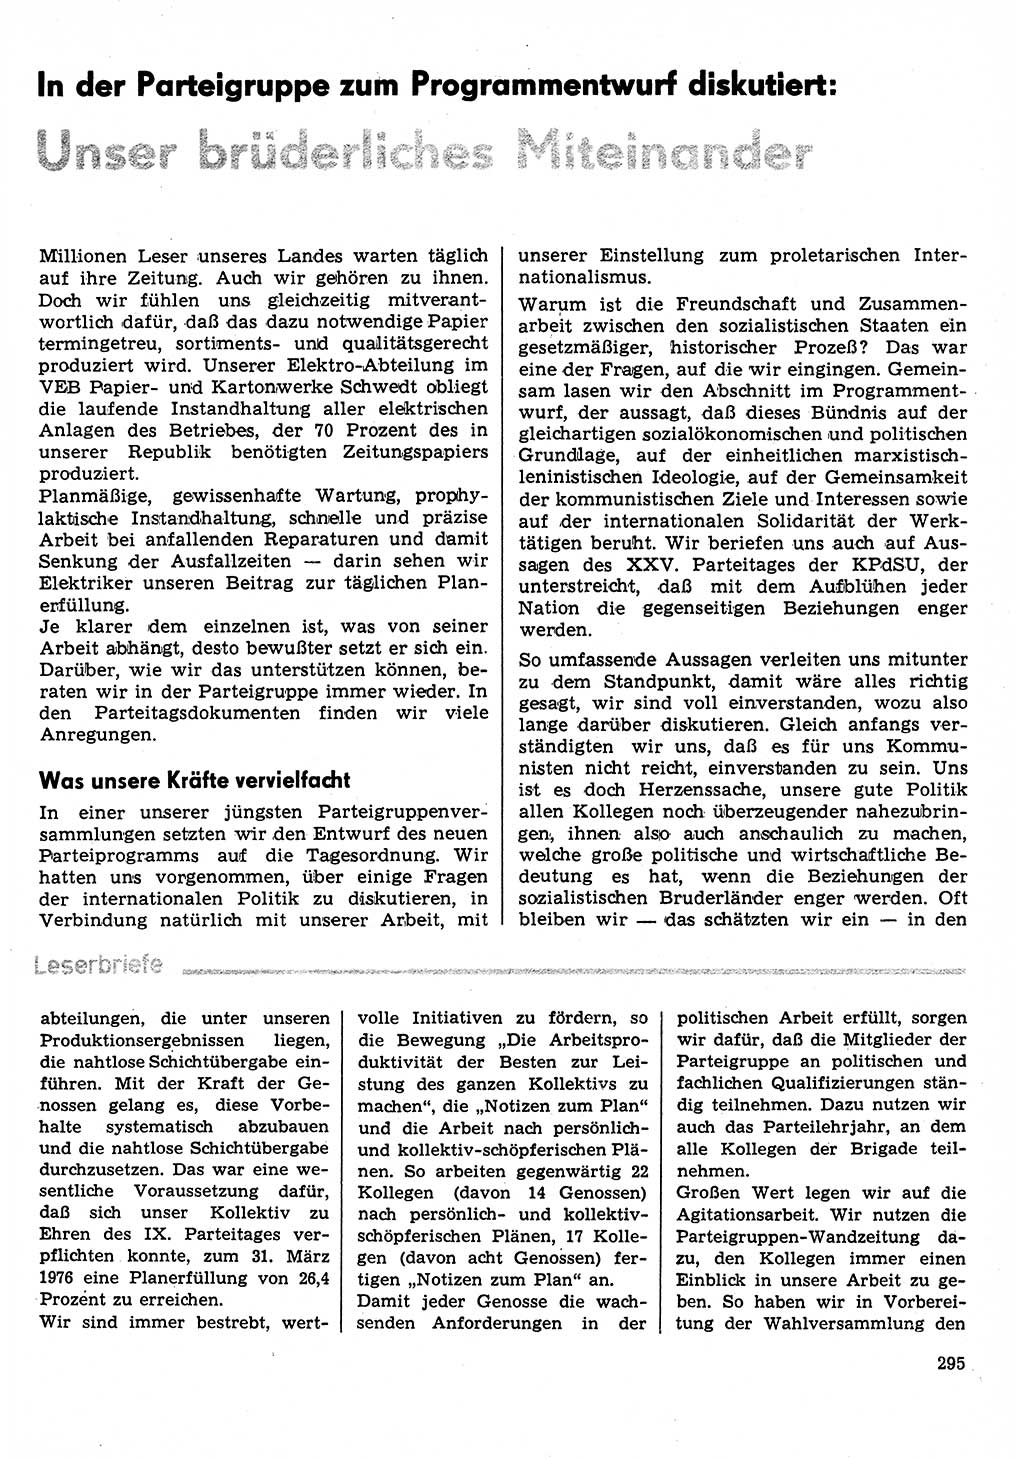 Neuer Weg (NW), Organ des Zentralkomitees (ZK) der SED (Sozialistische Einheitspartei Deutschlands) für Fragen des Parteilebens, 31. Jahrgang [Deutsche Demokratische Republik (DDR)] 1976, Seite 295 (NW ZK SED DDR 1976, S. 295)